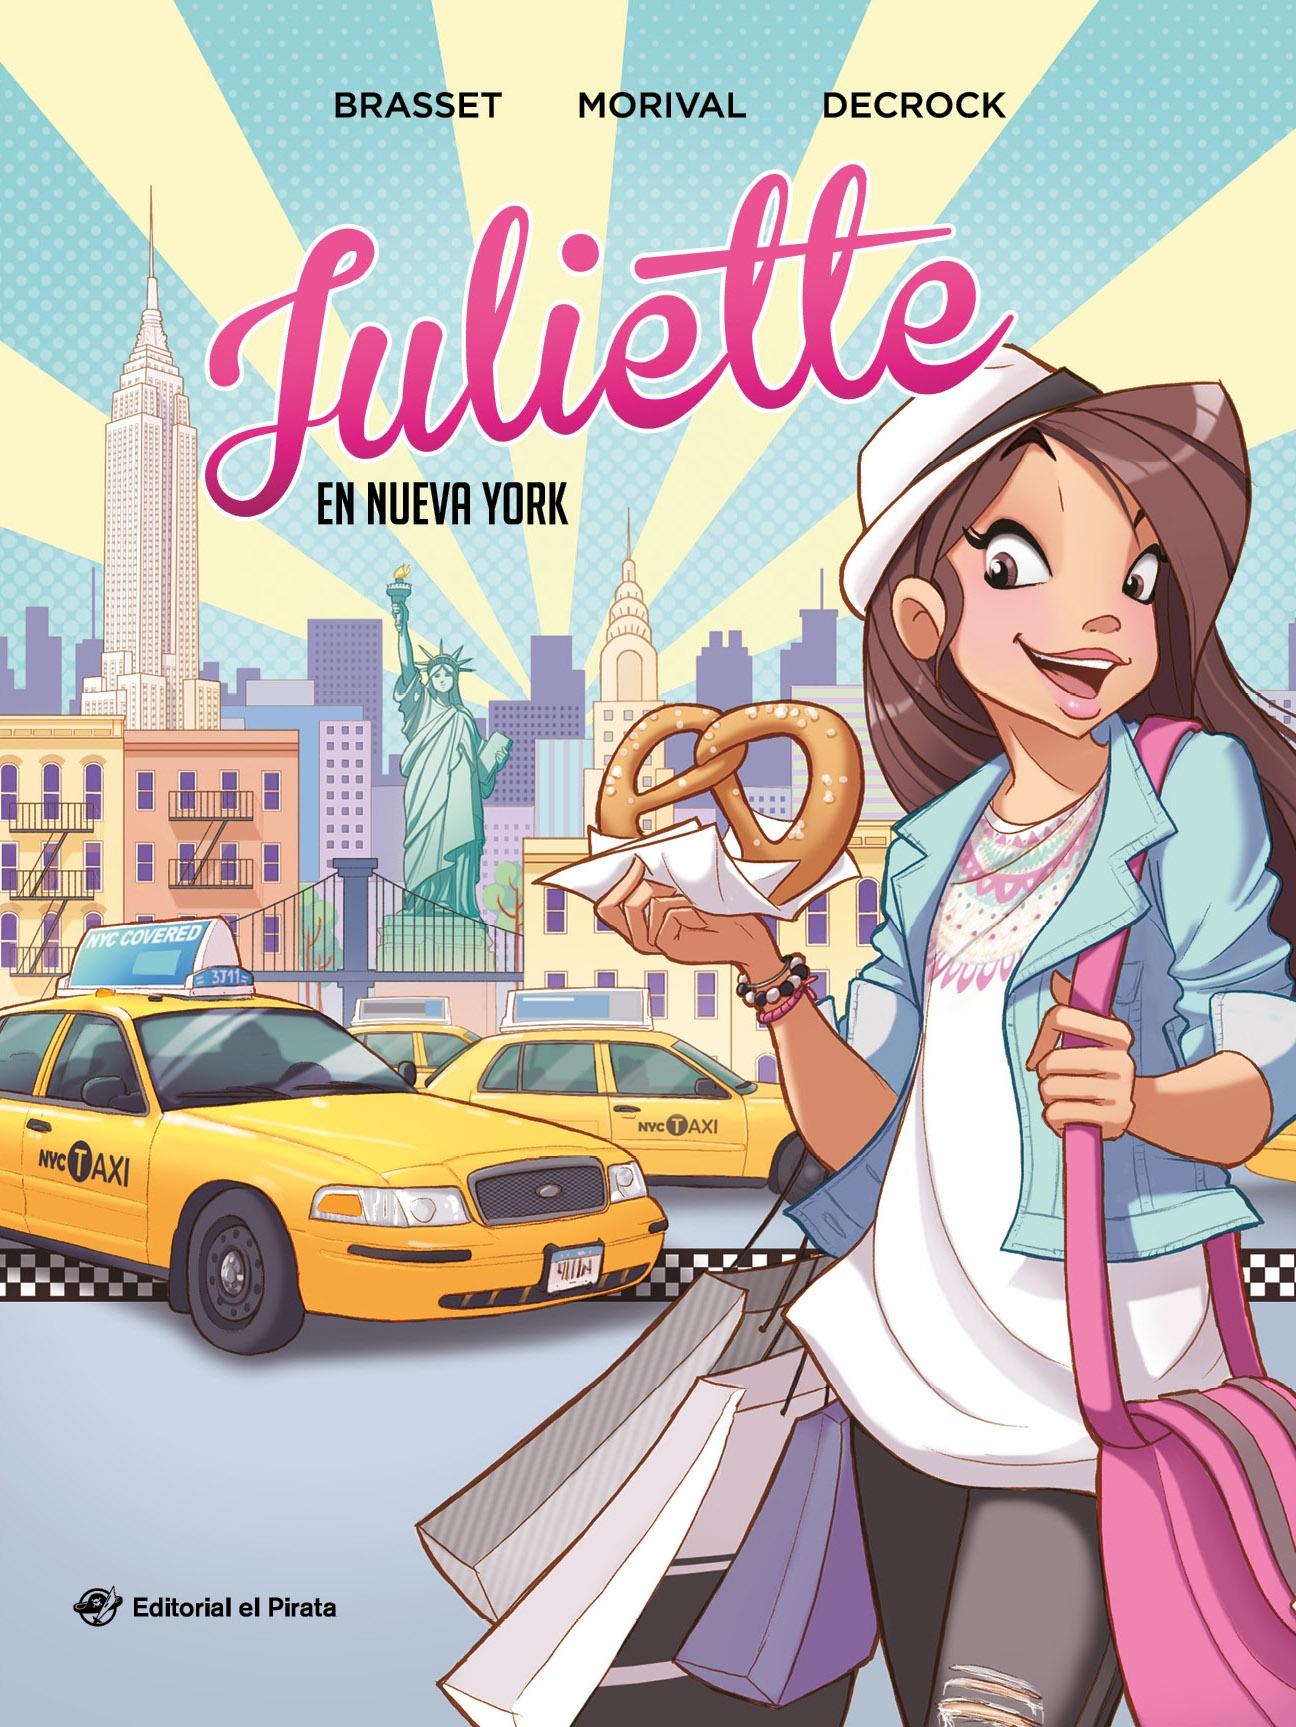 Juliette en Nueva York "Cómic Juvenil a Partir de 9 Años. ¡Descubre Nueva York con Juliette!". 